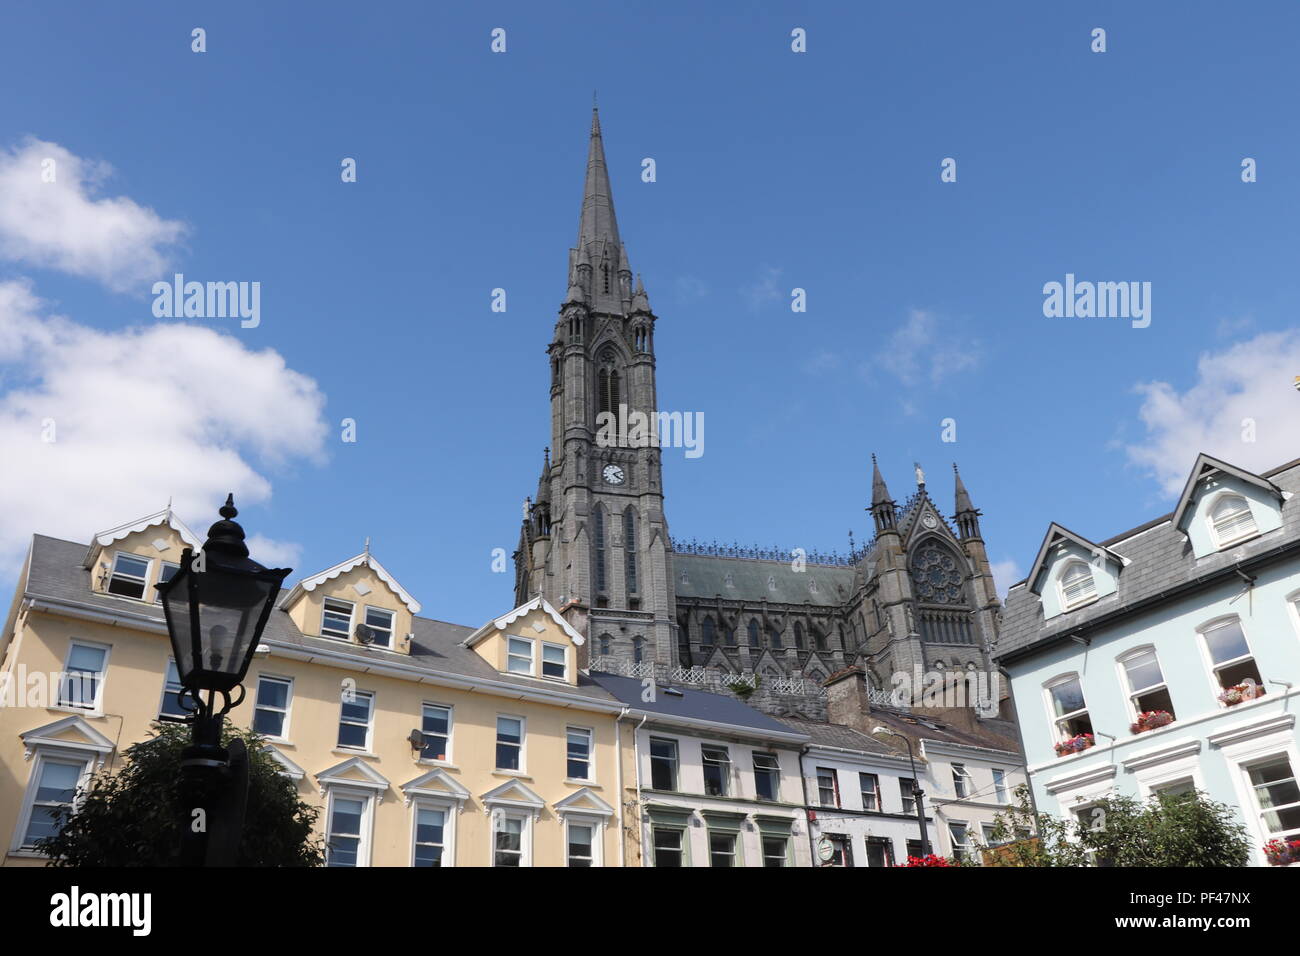 La graziosa cittadina di Cobh, dalla piazza principale, con il magnifico secoli vecchia cattedrale come punto focale. Foto Stock